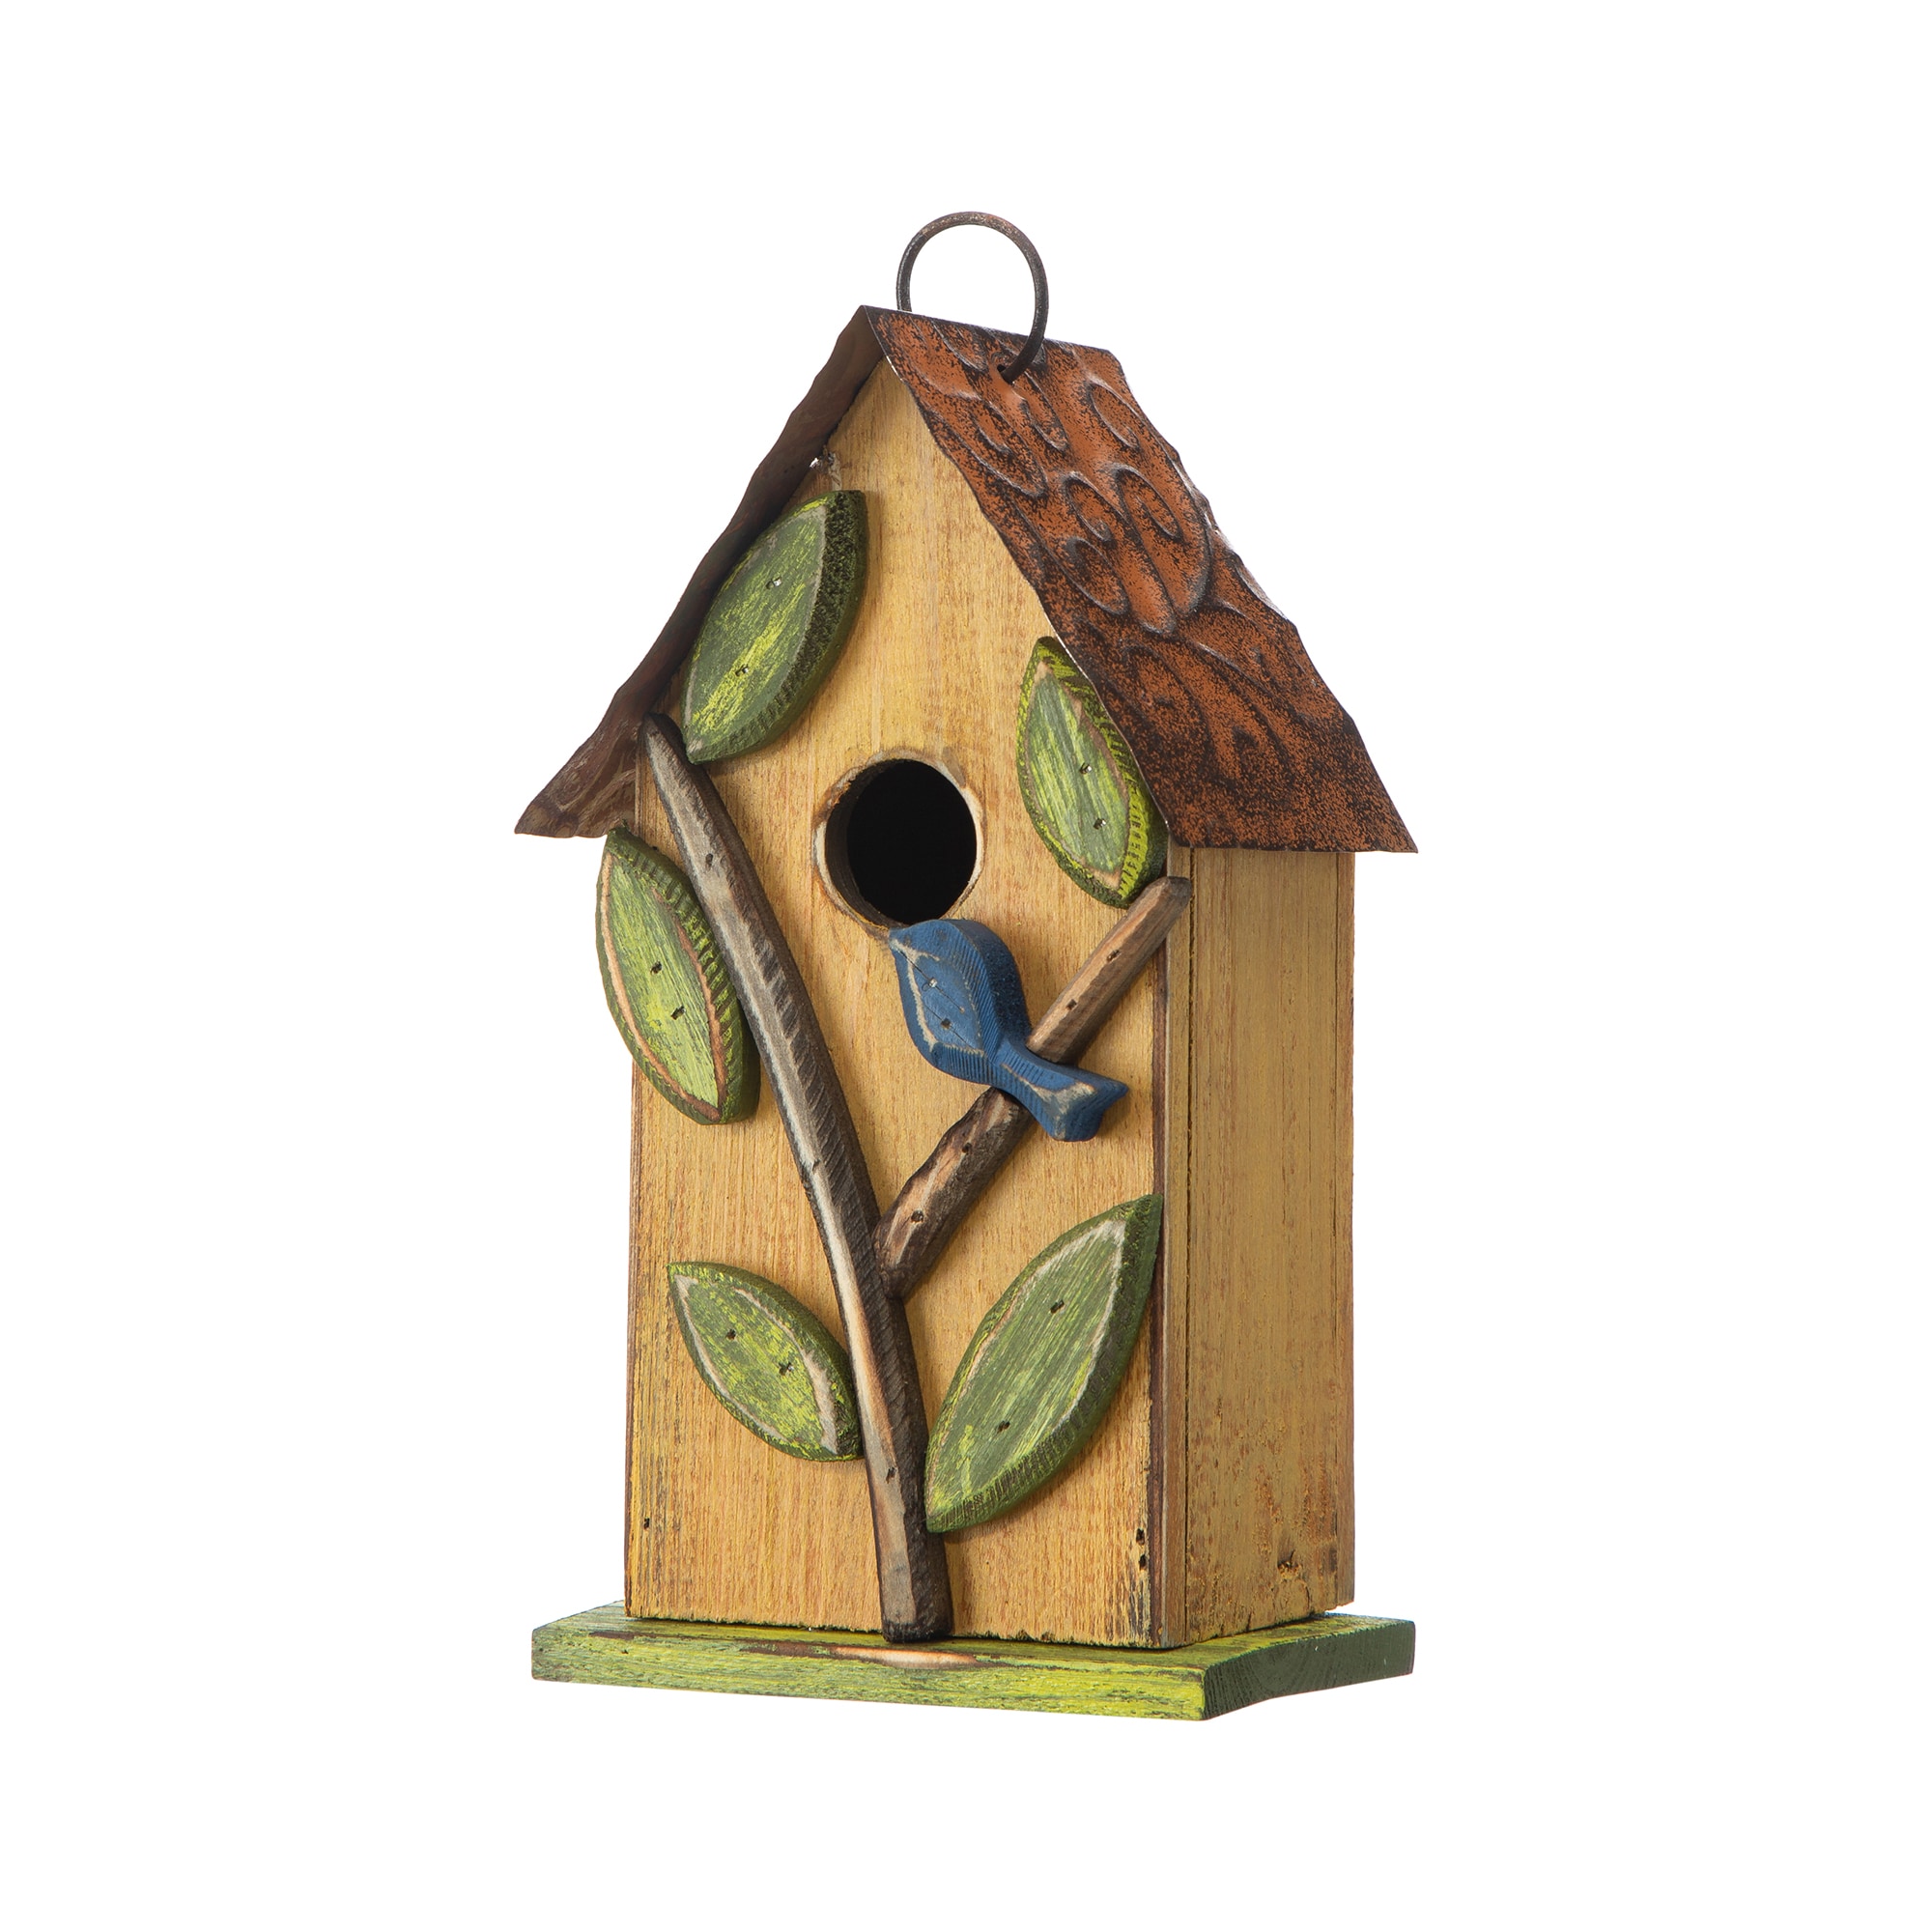 Outdoor Wooden Bird House Nail Fixed Bird Nesting Box Bird Feeder Birdhouse